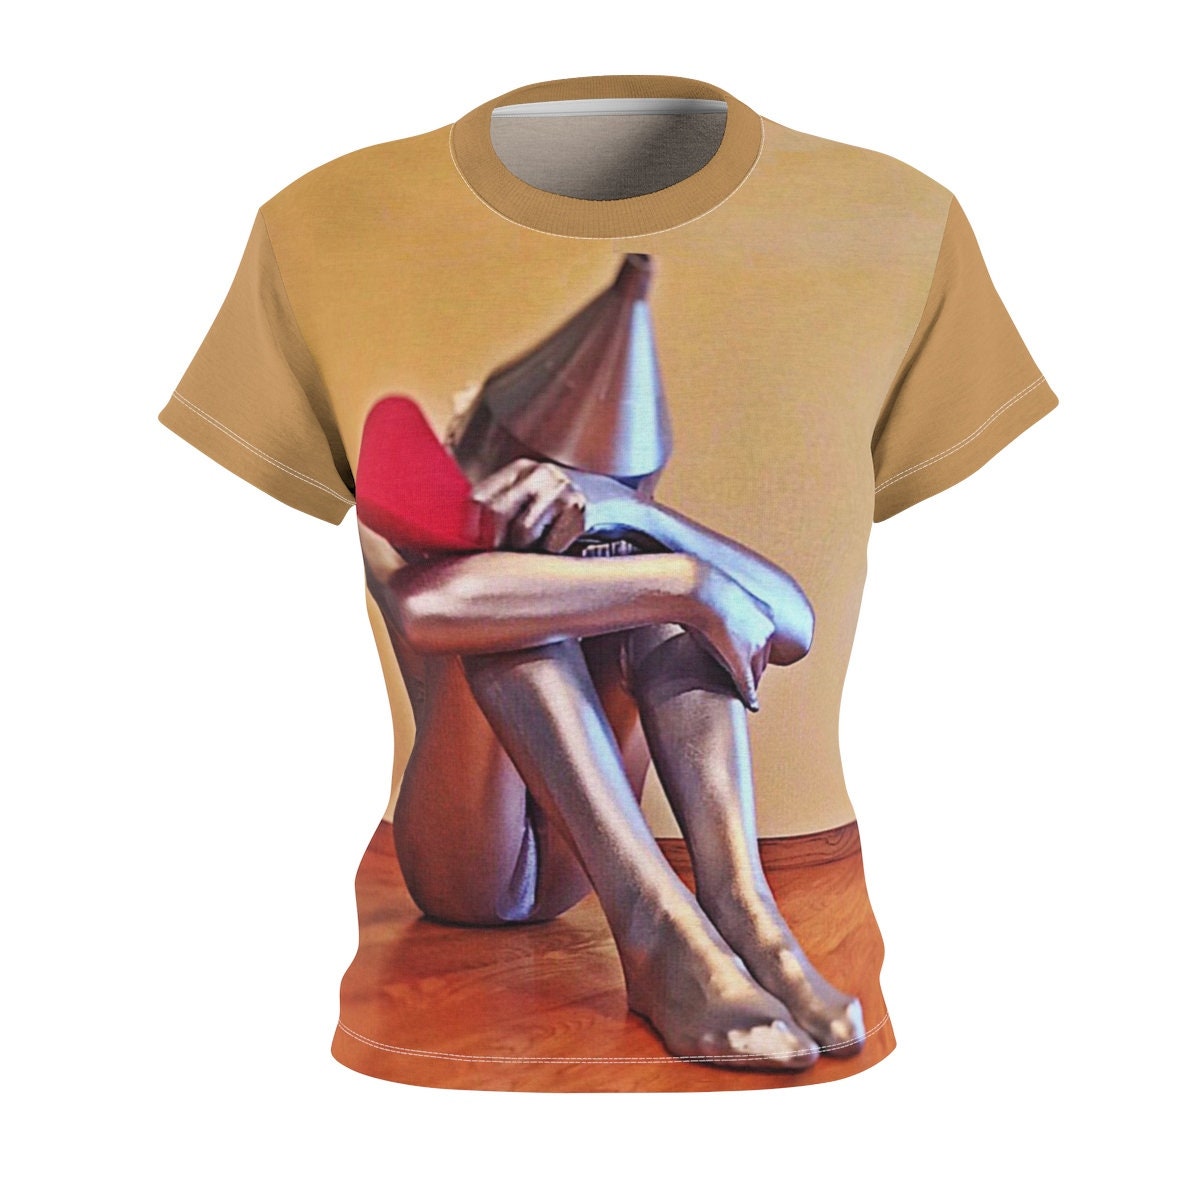 Birthday Gift / Wizard of Oz / Women's / Tee T-Shirt Shirt / Tin man / Heart / Valentine's gift / Pretty / Classic / Art / New / Sexy - Chloe Lambertin